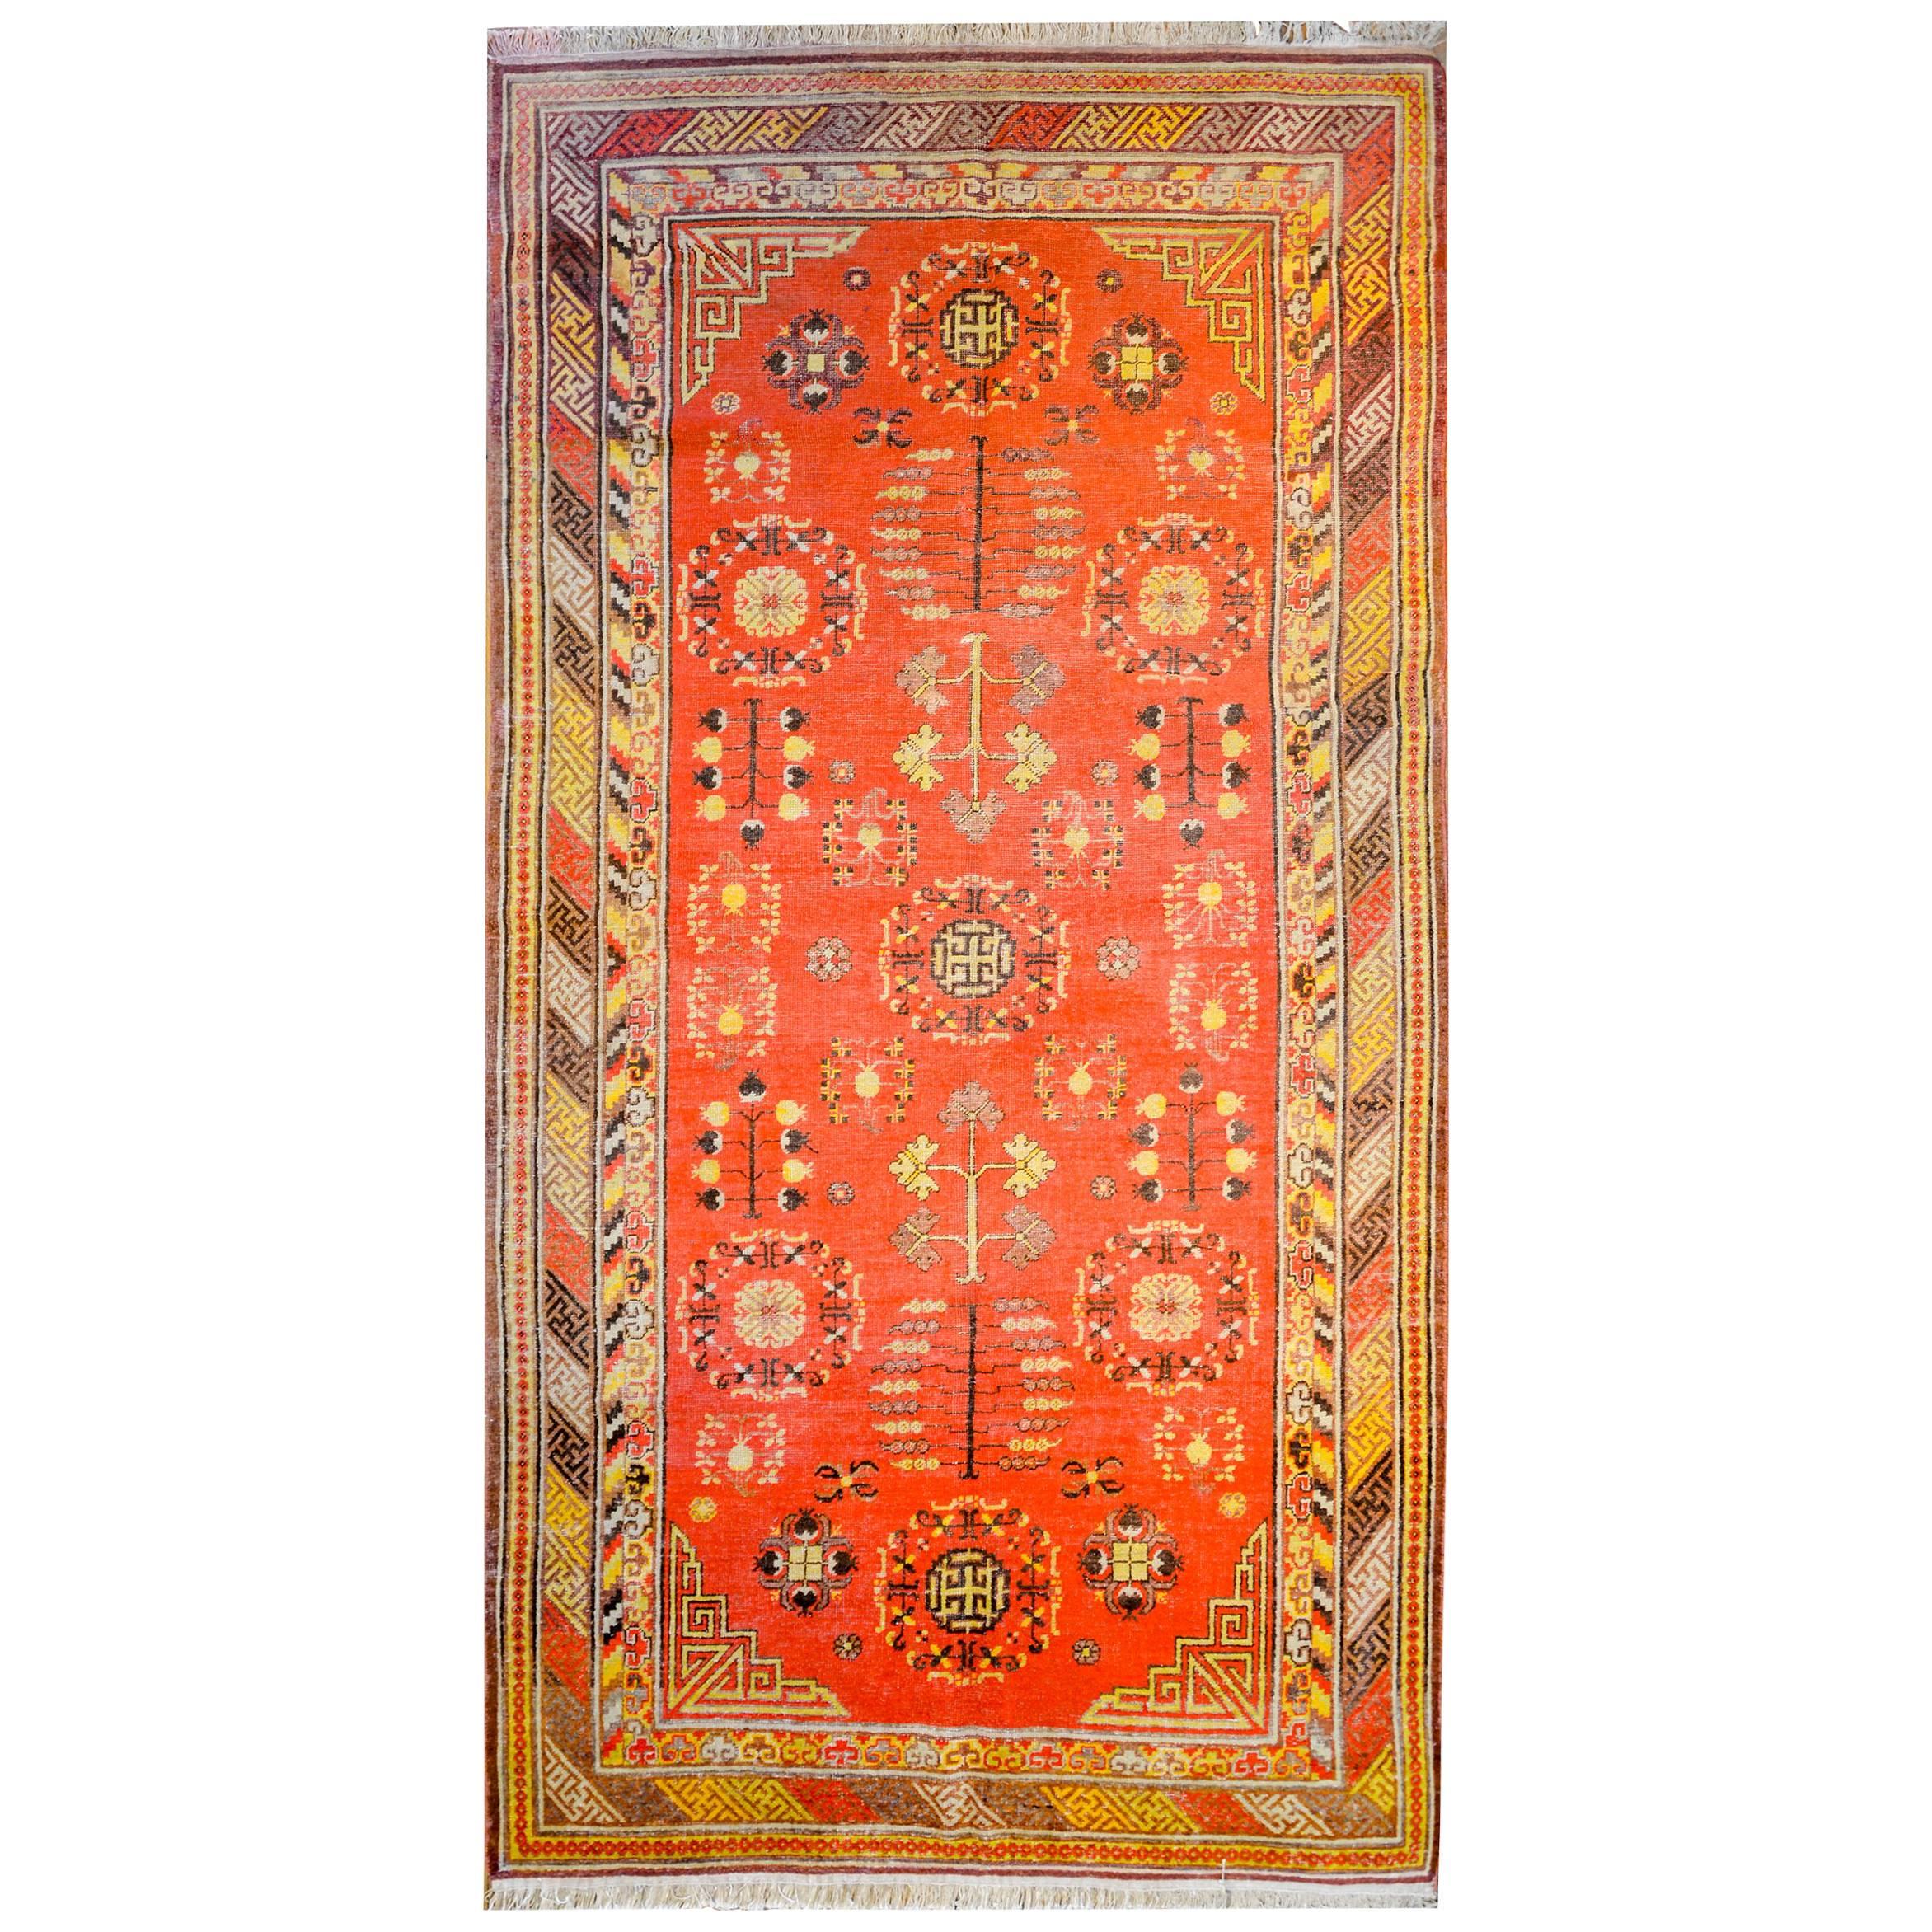 Schöner Khotan-Teppich aus dem frühen 20. Jahrhundert